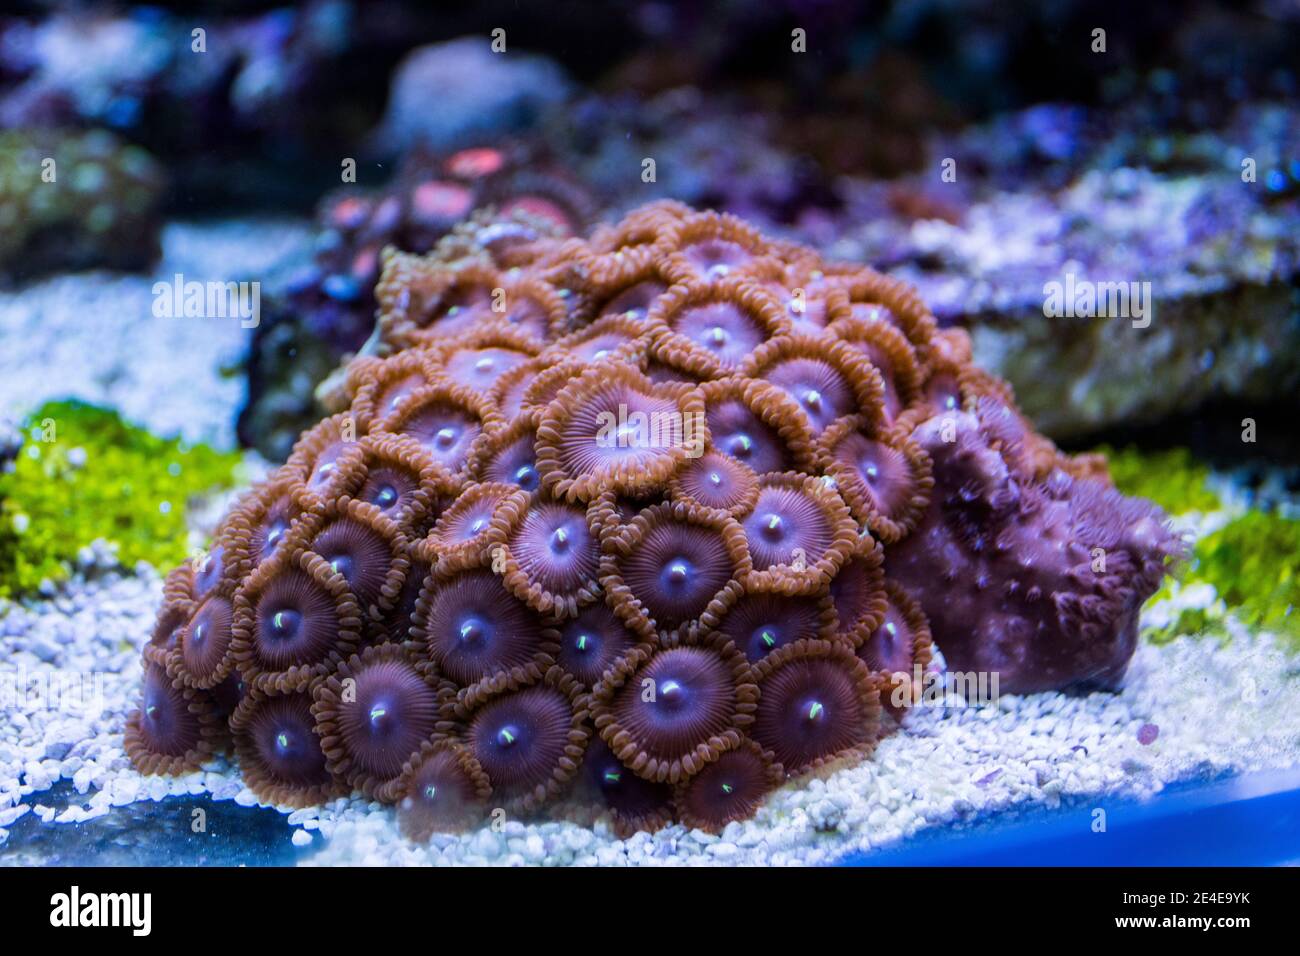 Colonie de polypes de Zoanthus dans un aquarium marin d'eau salée Banque D'Images